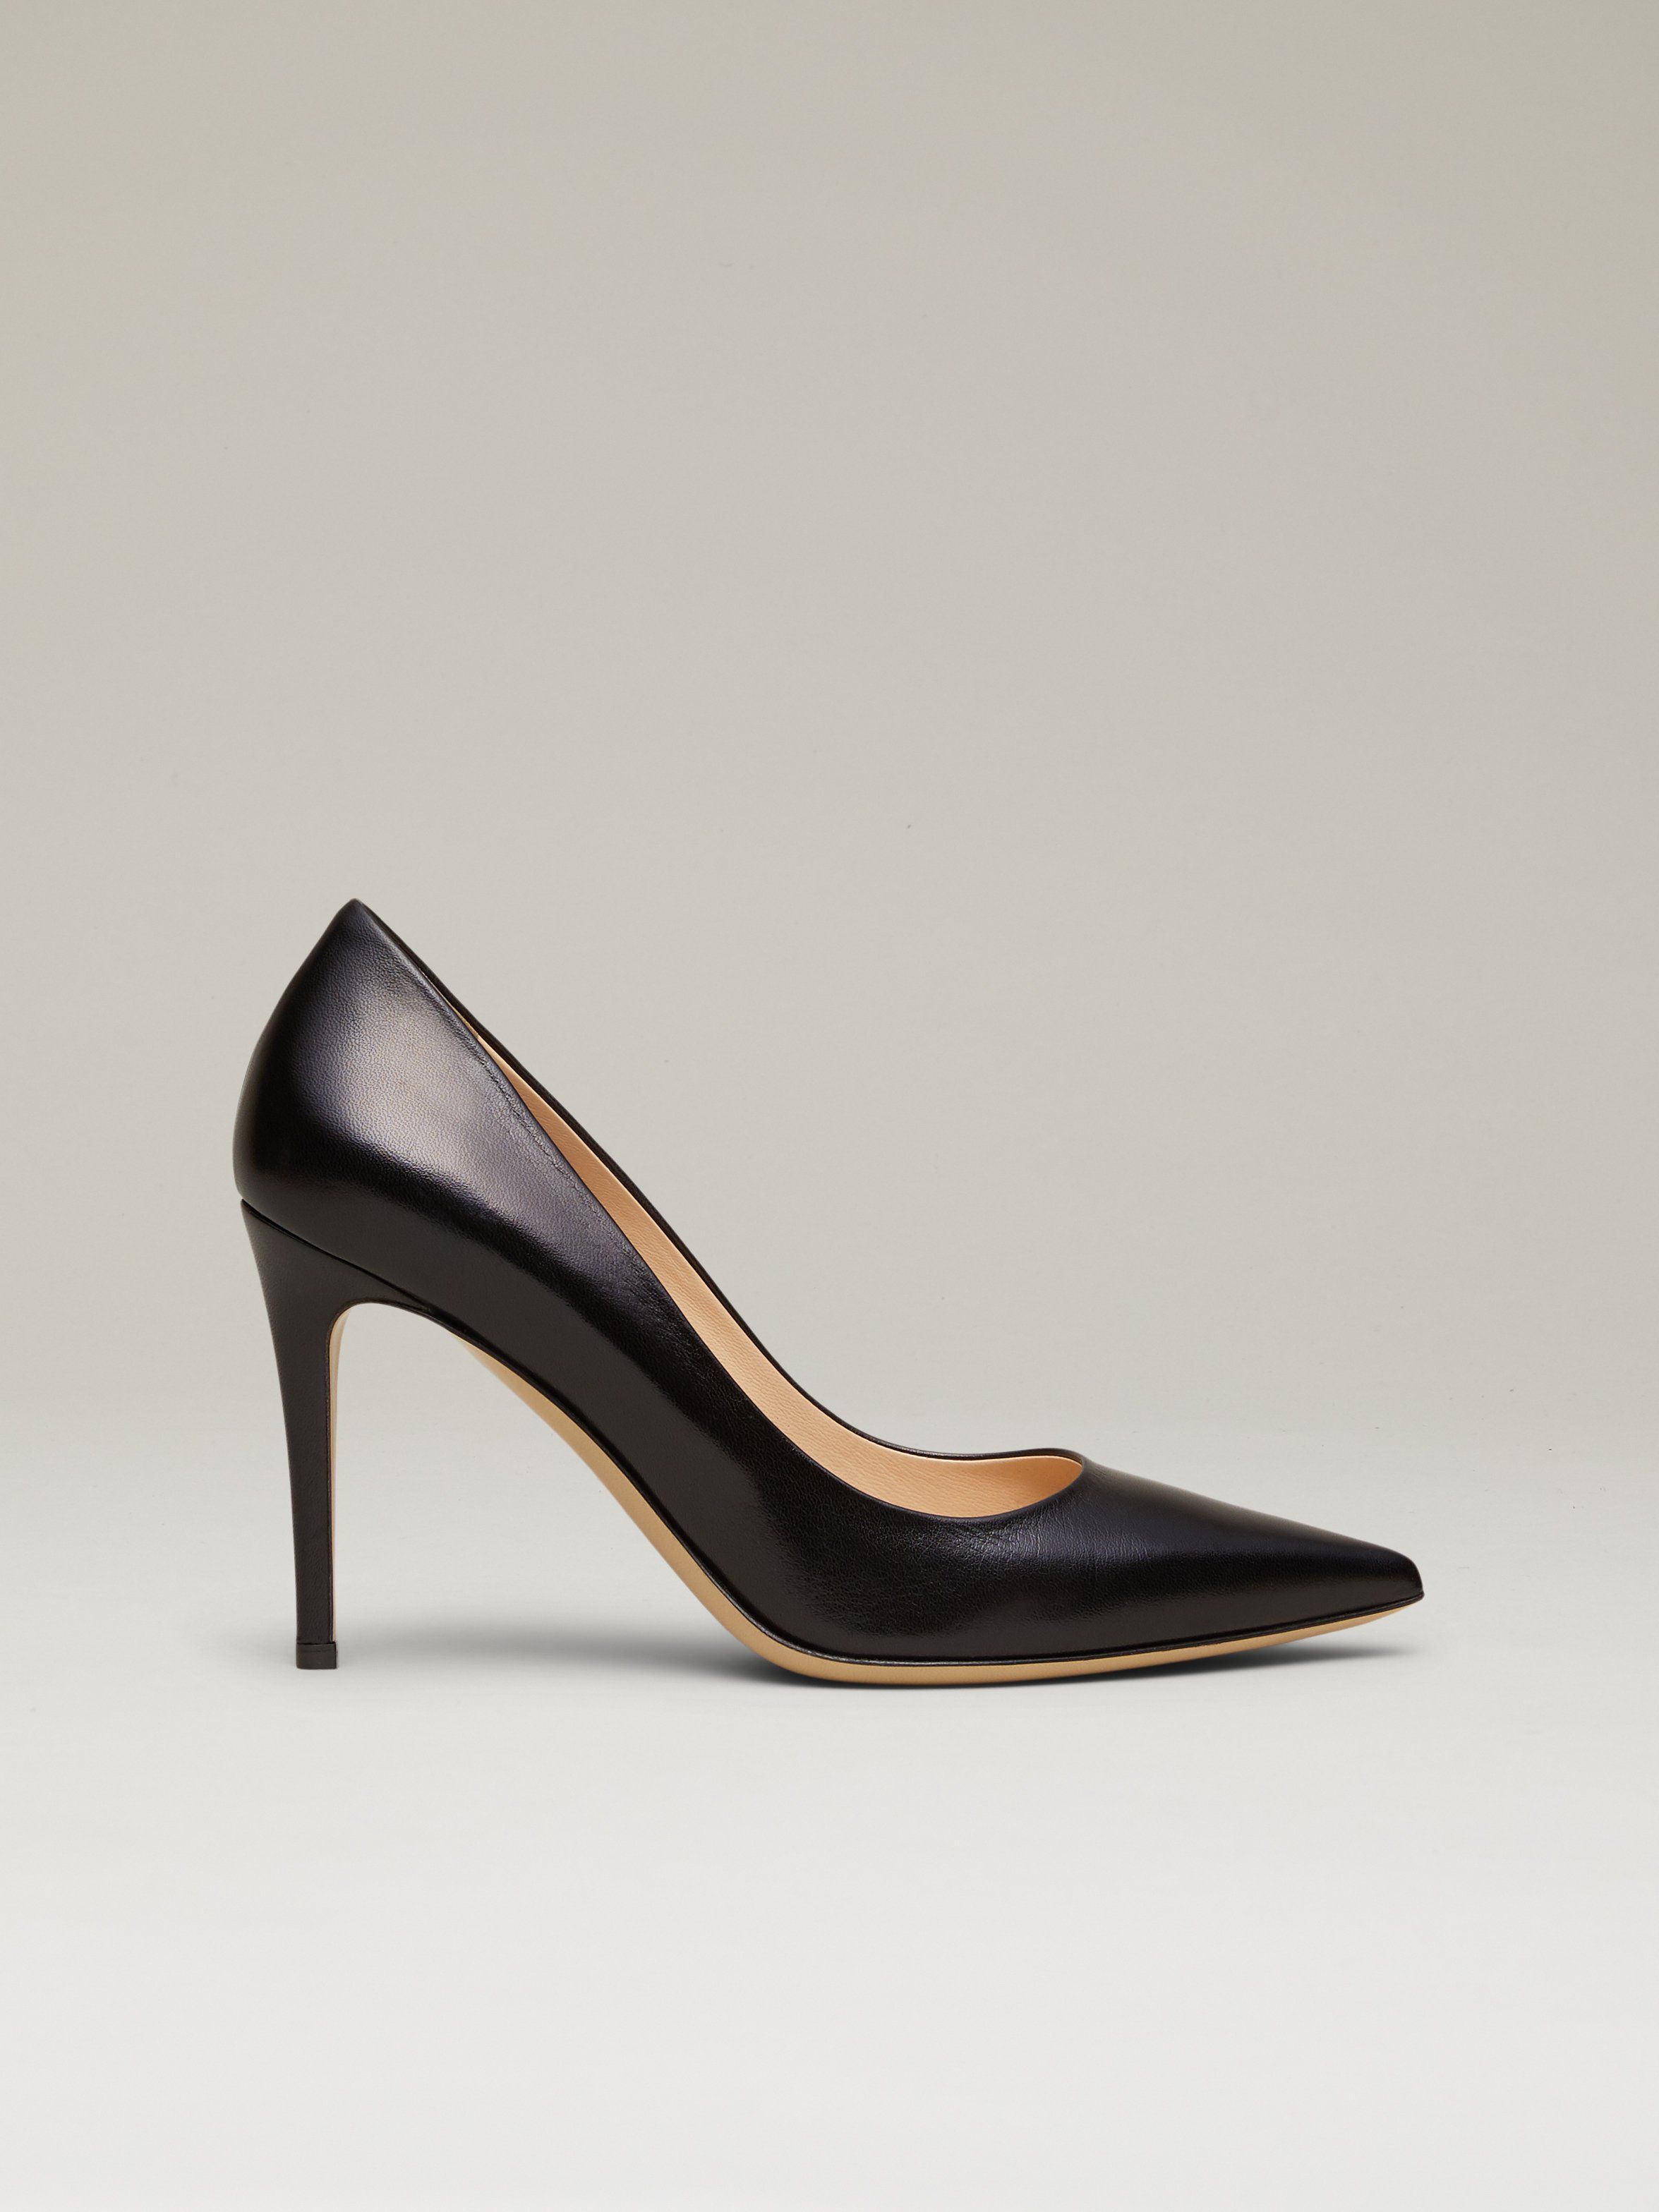 Buy > women's grey shoes heels > in stock